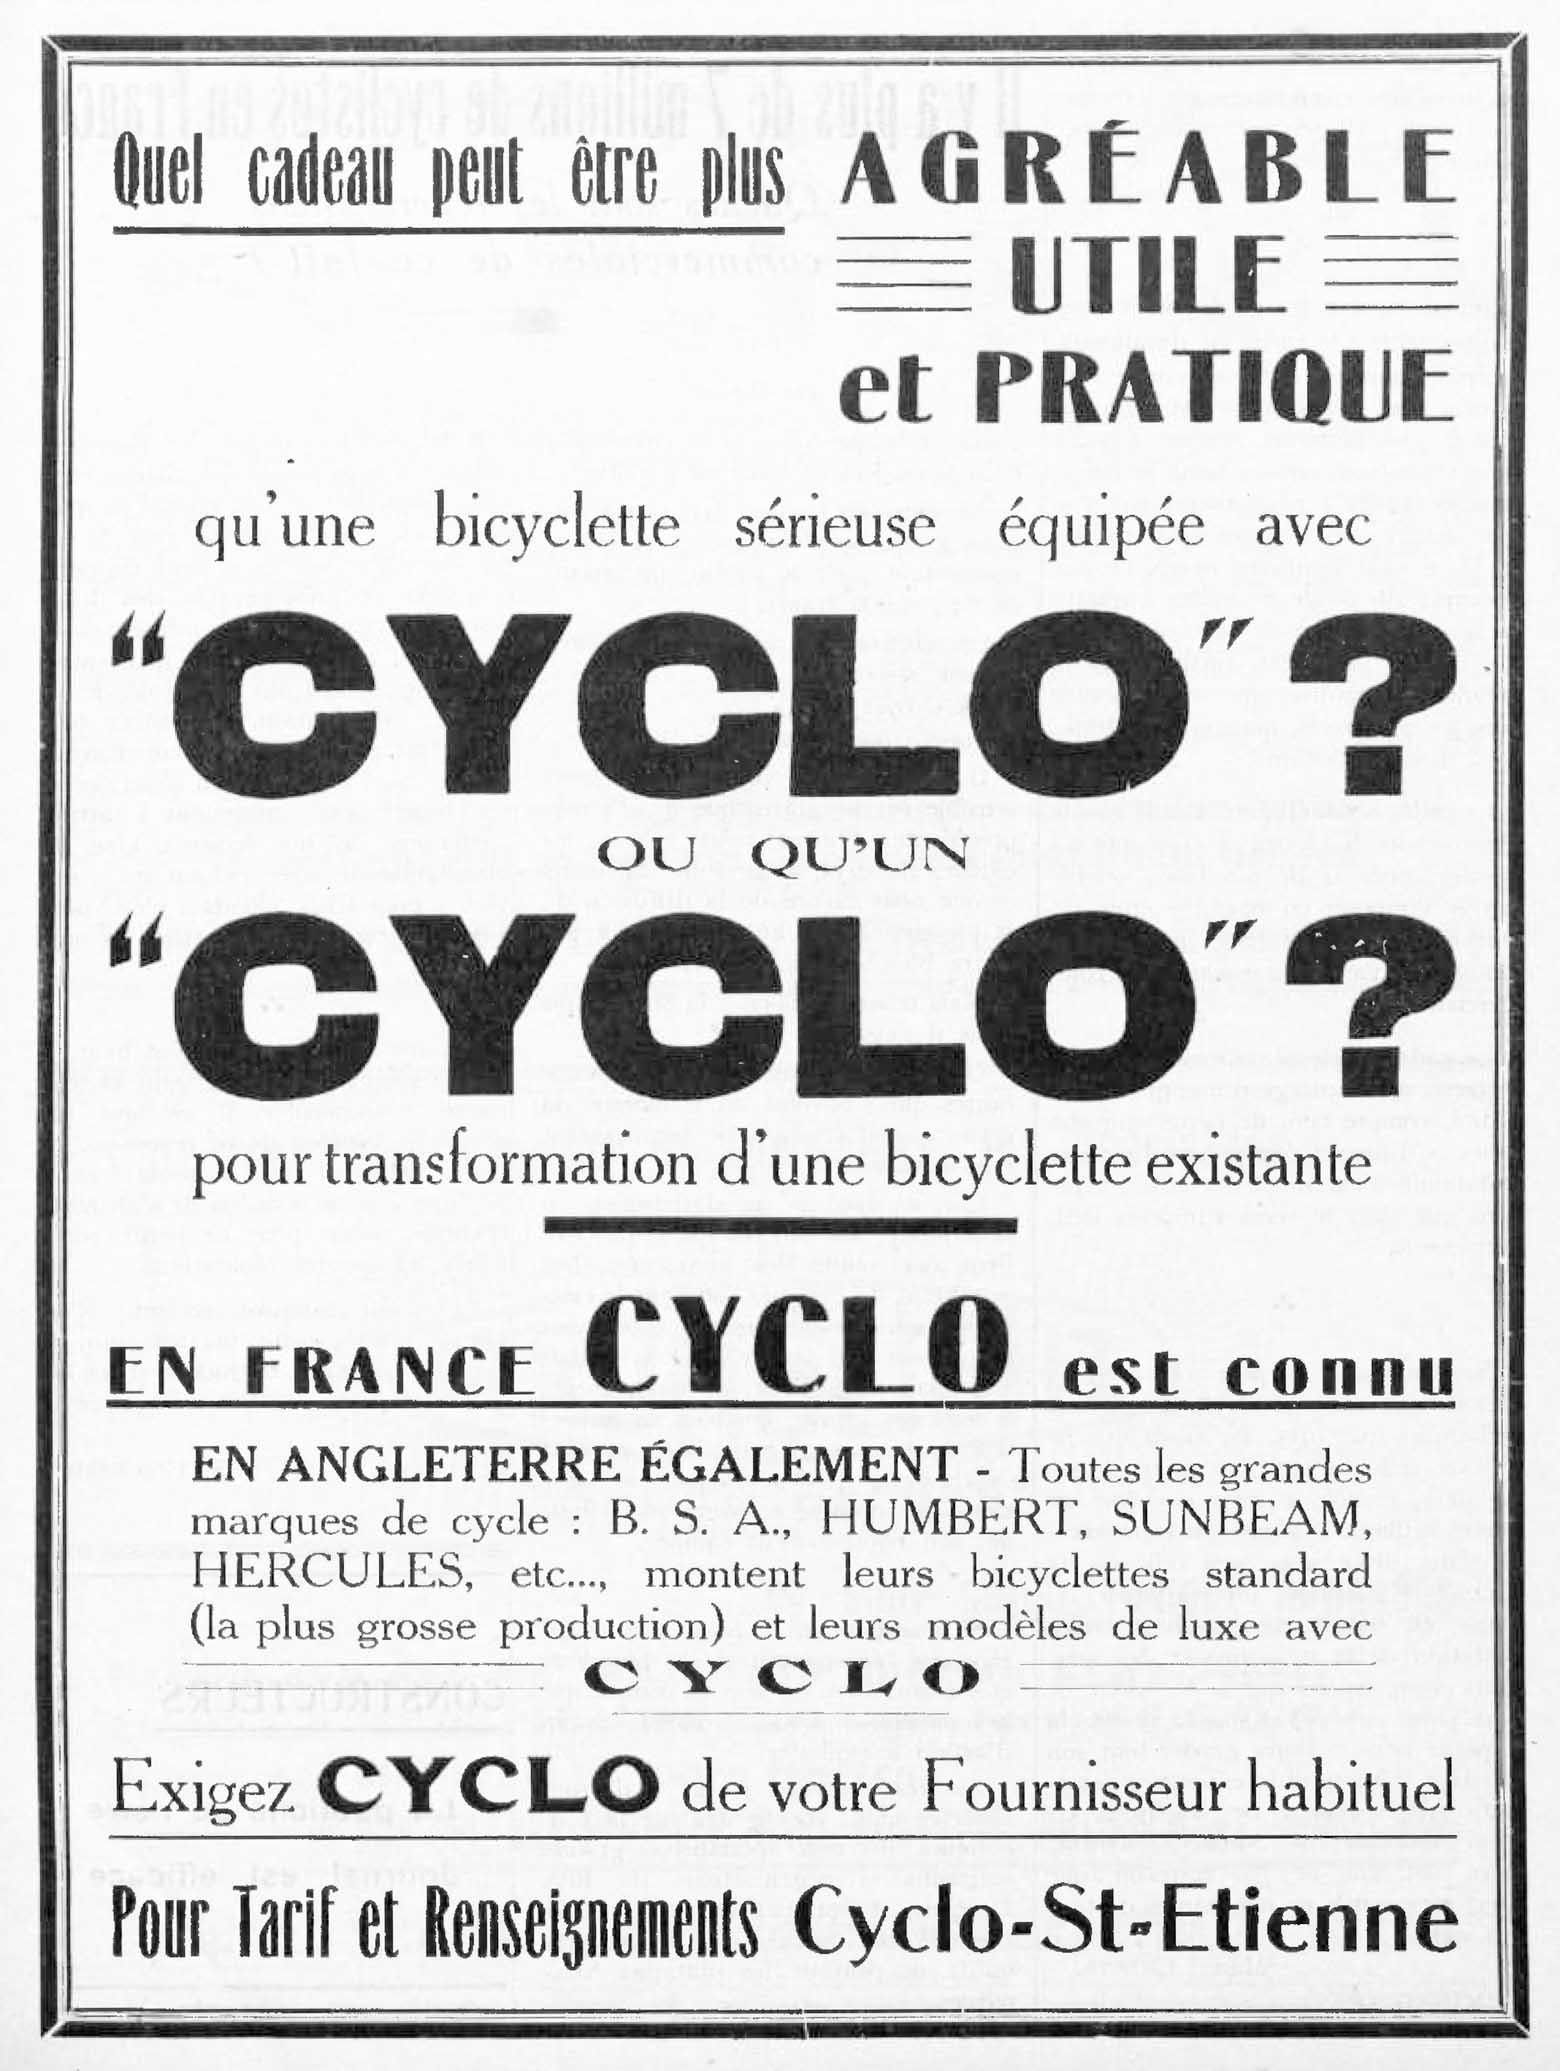 L'Industrie des Cycles et Automobiles November 1936 - Cyclo advert main image